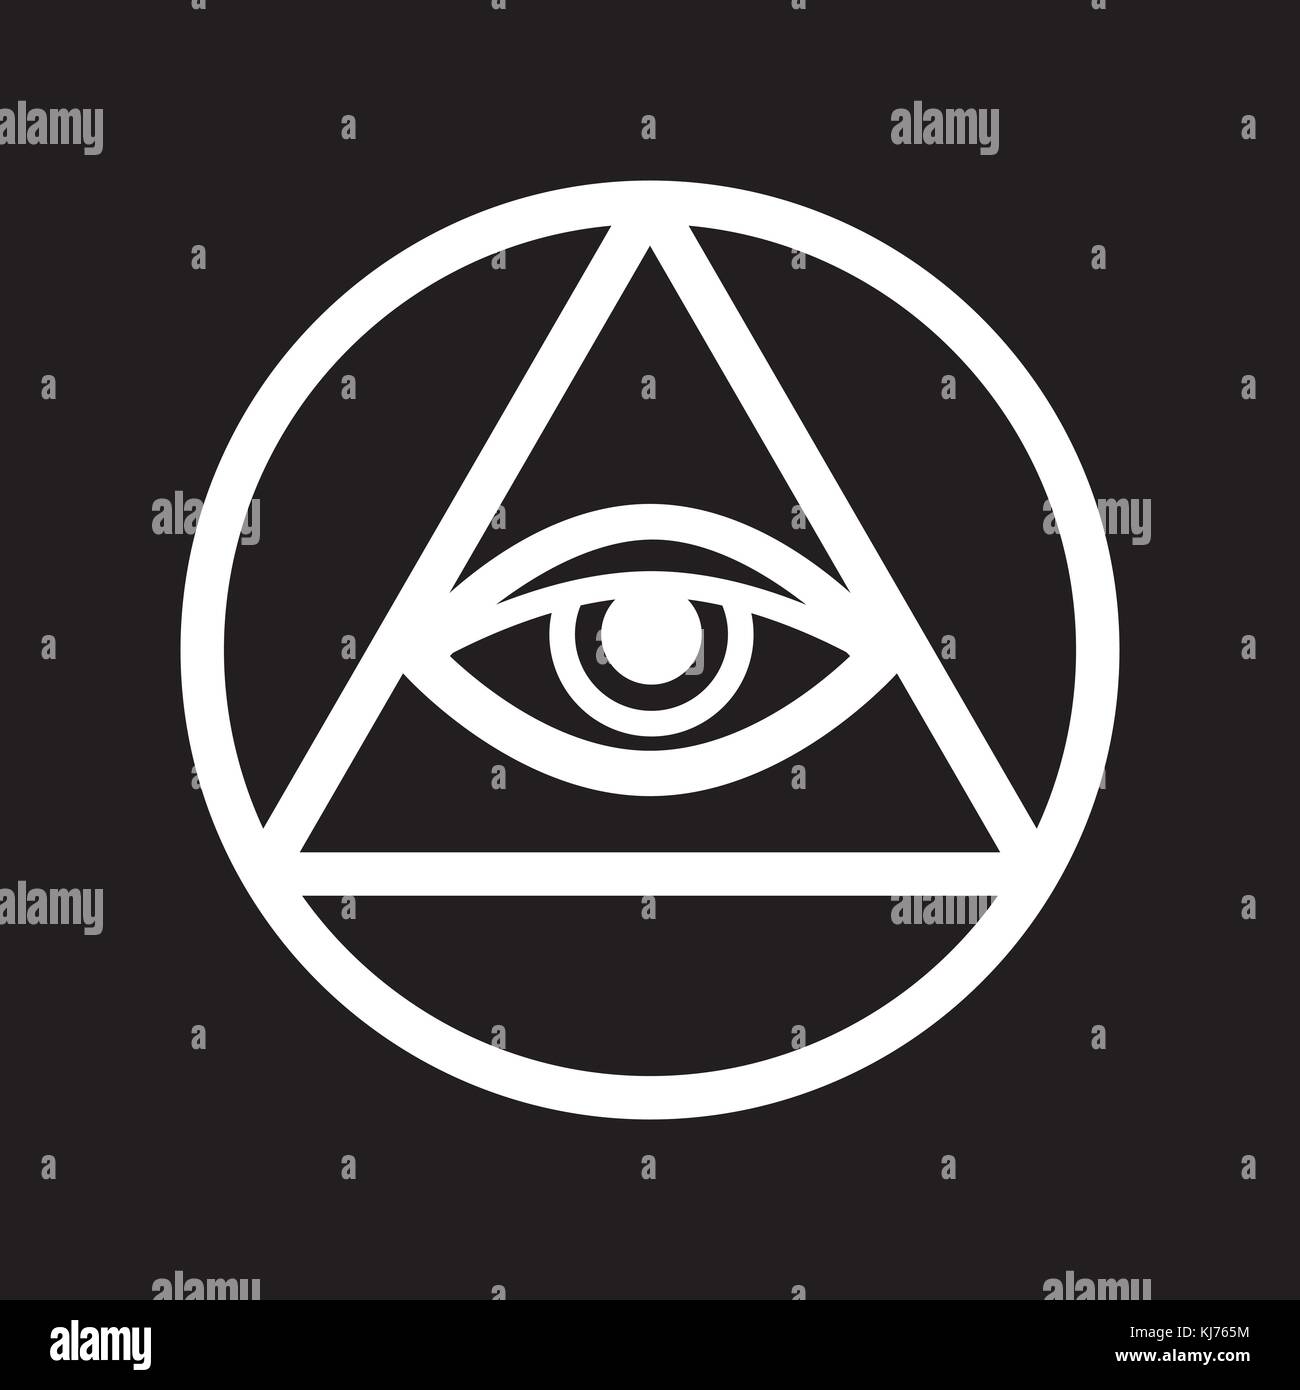 Illuminati symbol Banque de photographies et d'images à haute résolution -  Page 2 - Alamy